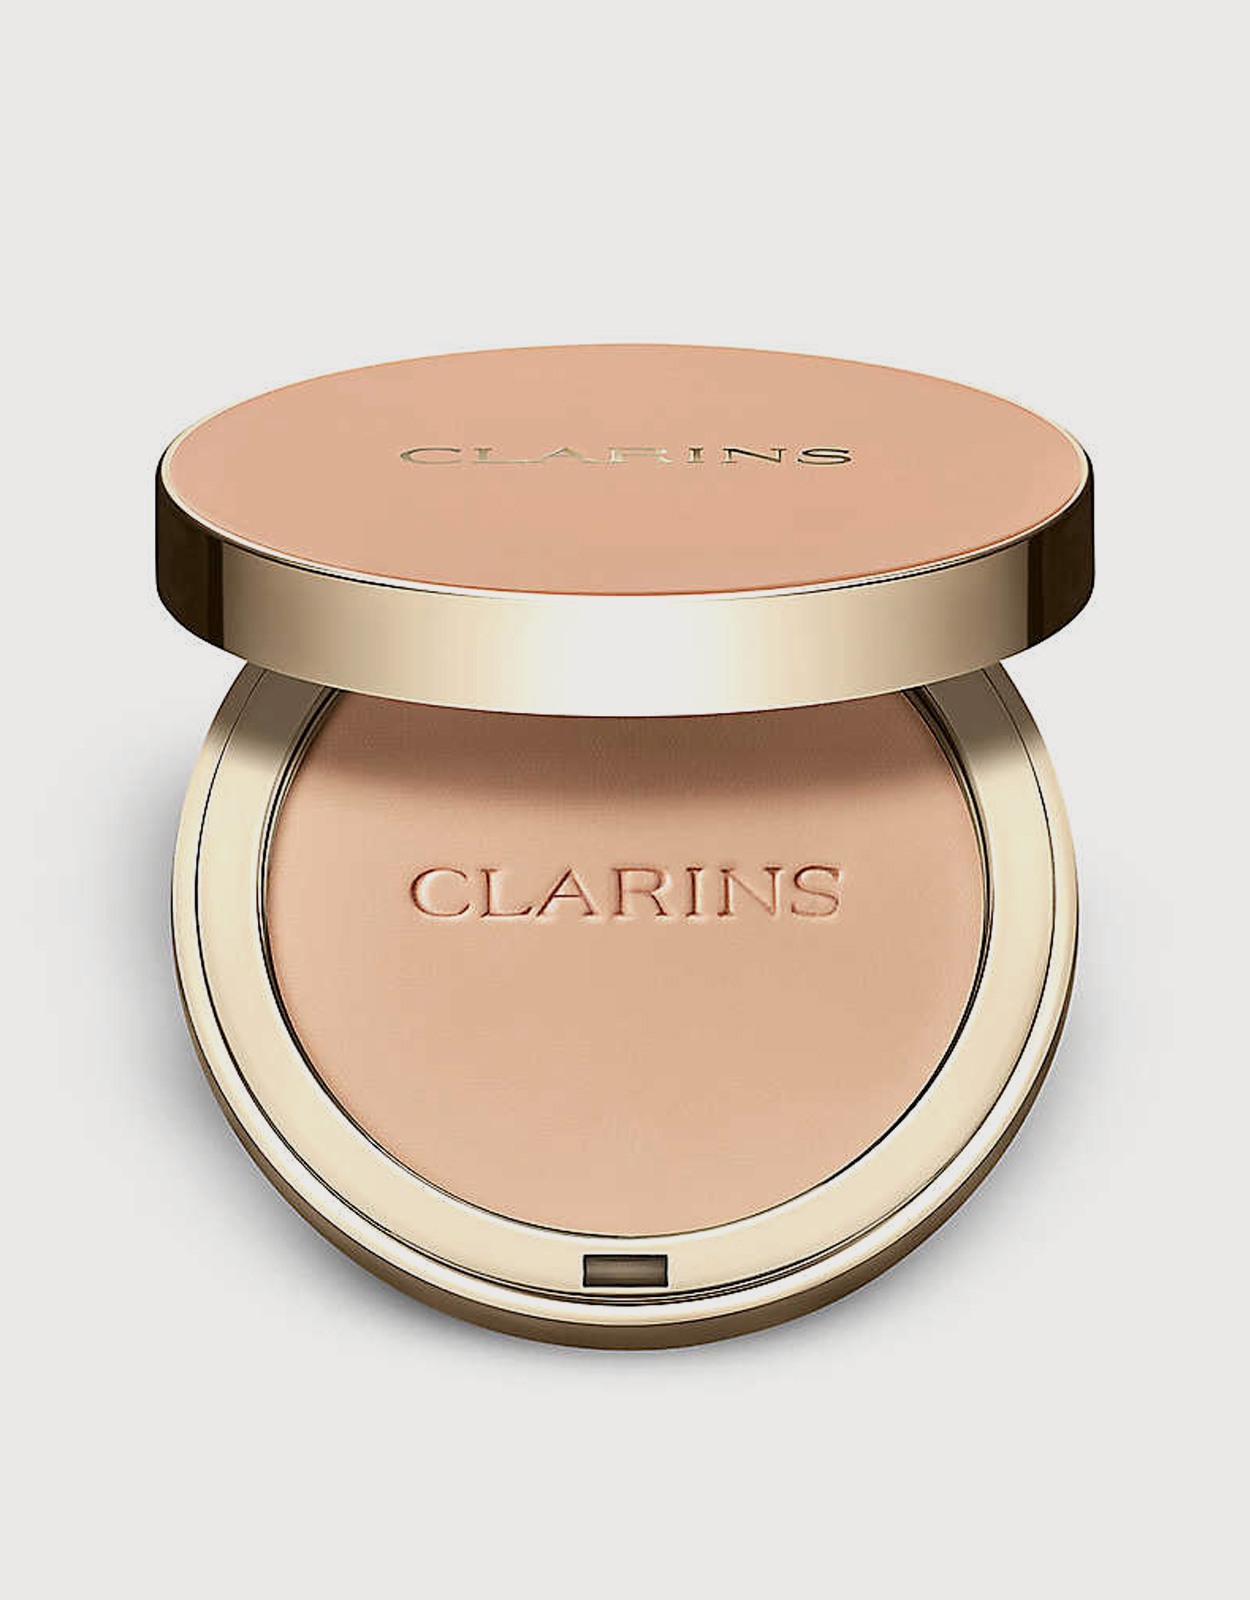 Clarins Compact Powder-03 light (Makeup,Face,Powder) IFCHIC.COM